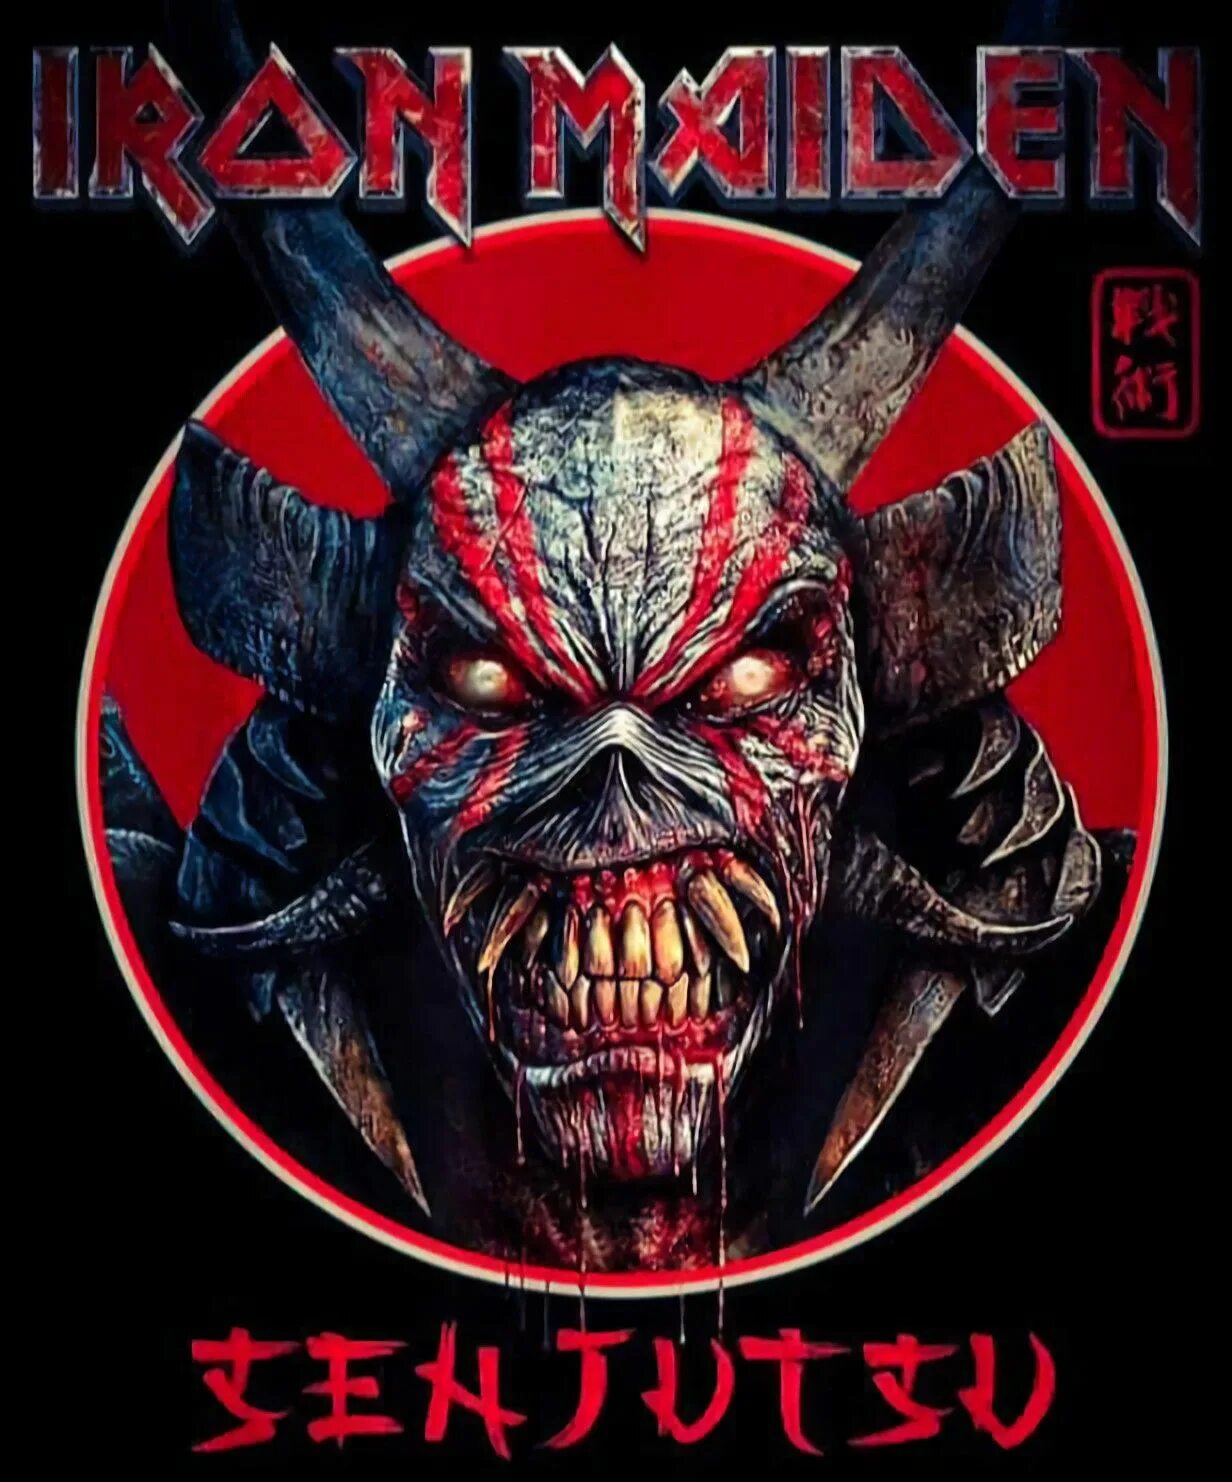 Группа Iron Maiden 2021. Iron Maiden Senjutsu 2021. Iron Maiden "Senjutsu". Iron Maiden Senjutsu обложка.